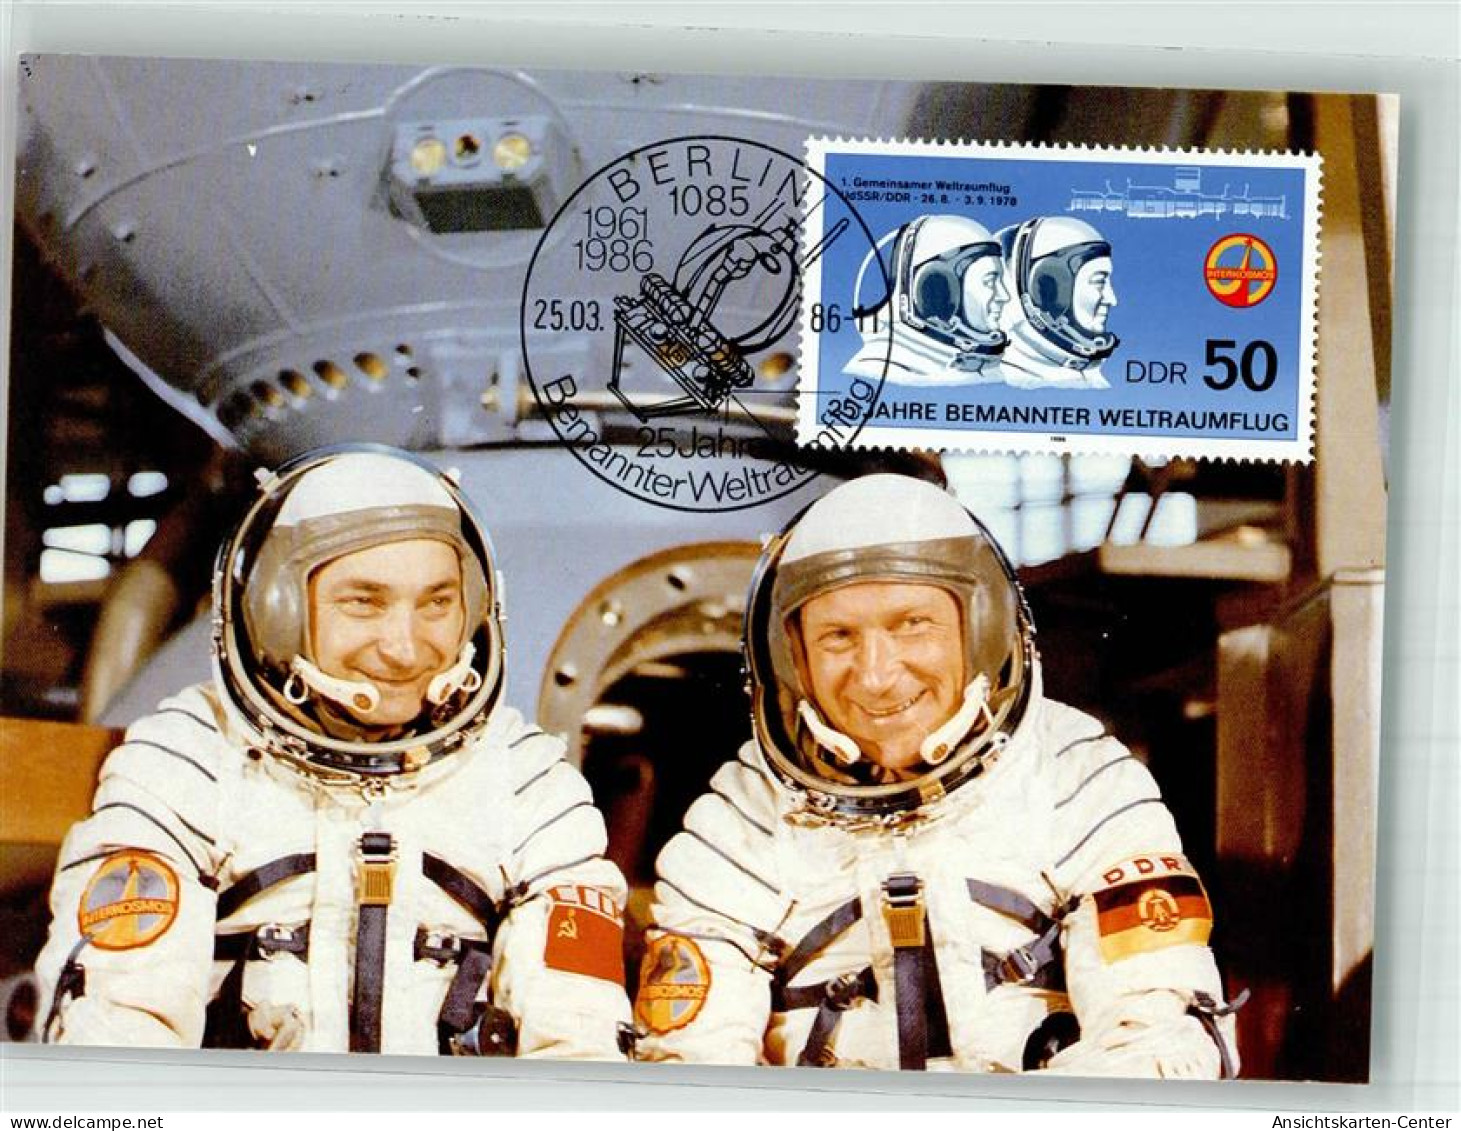 39867307 - Astronauten Waleri Bykowski Und Sigmund Jaehn 1 Gemeinsamer Weltraumflug 1978 Sondermarke Sonderstempel - Ruimtevaart